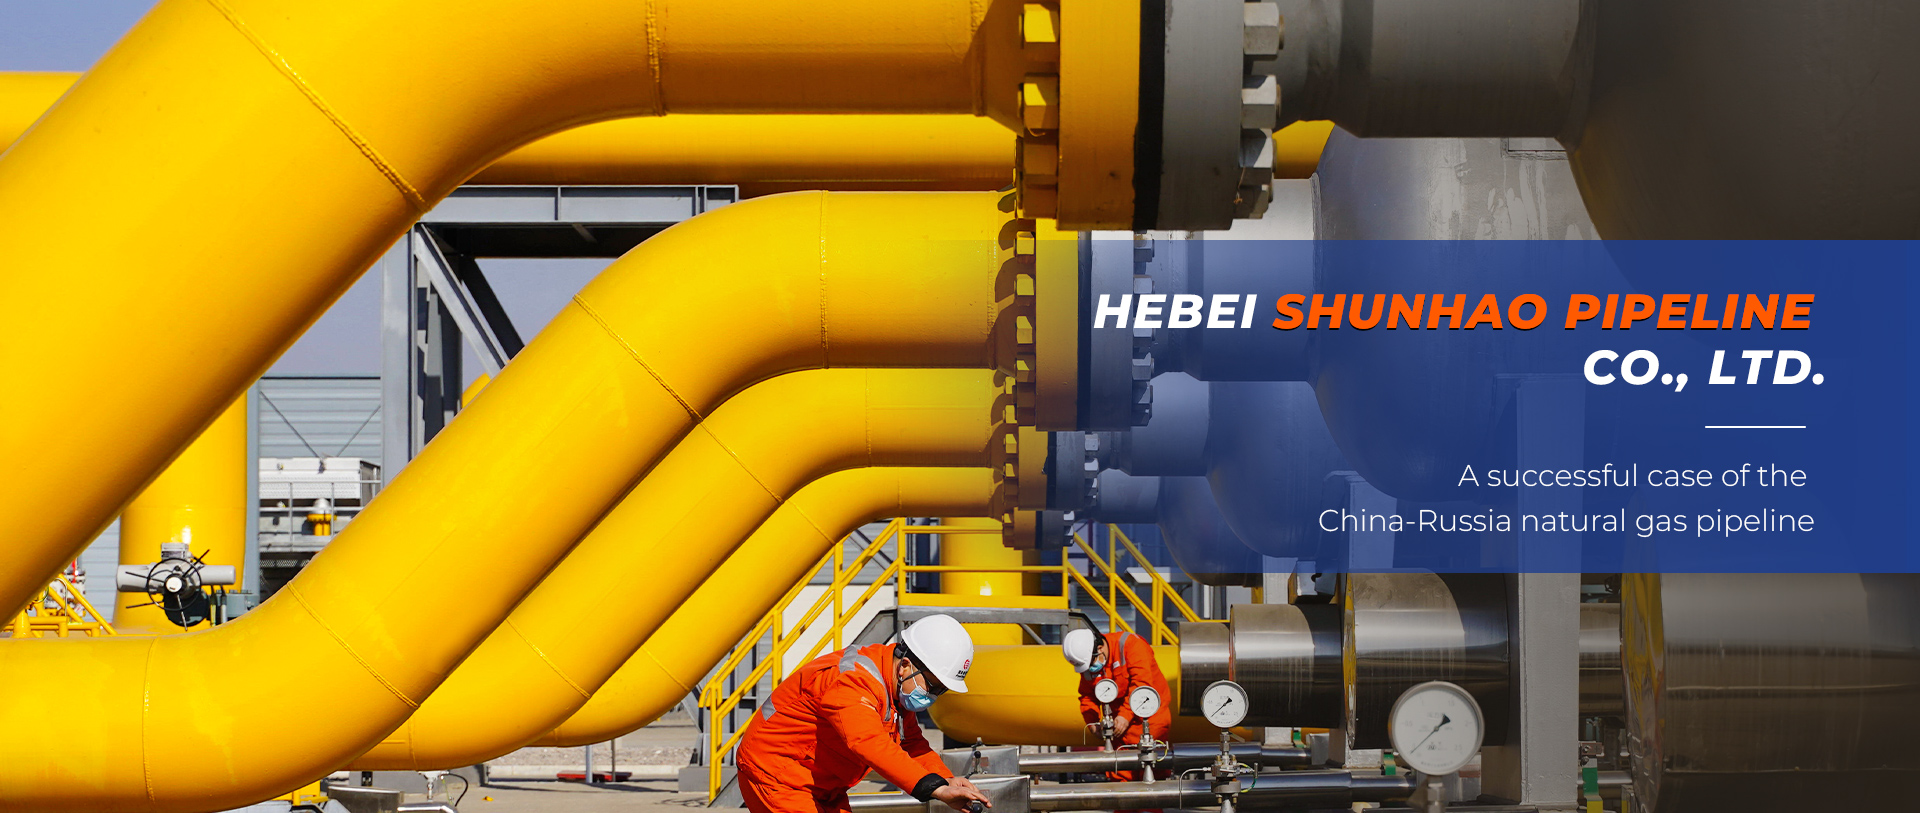 Hebei Shunhao Pipeline Co., Ltd